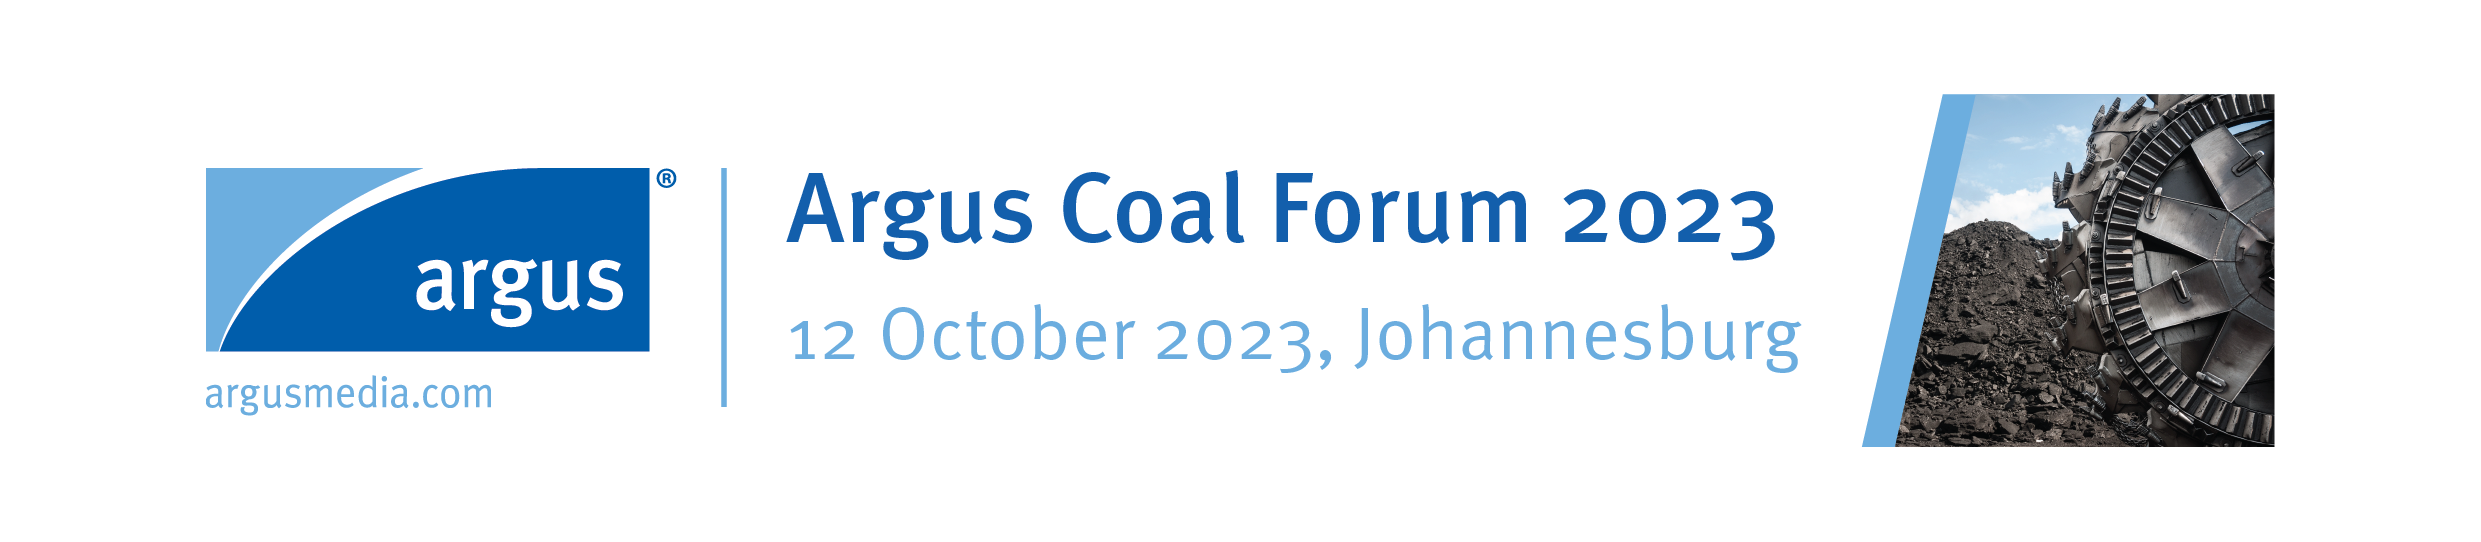 Argus-Coal-Forum-2023